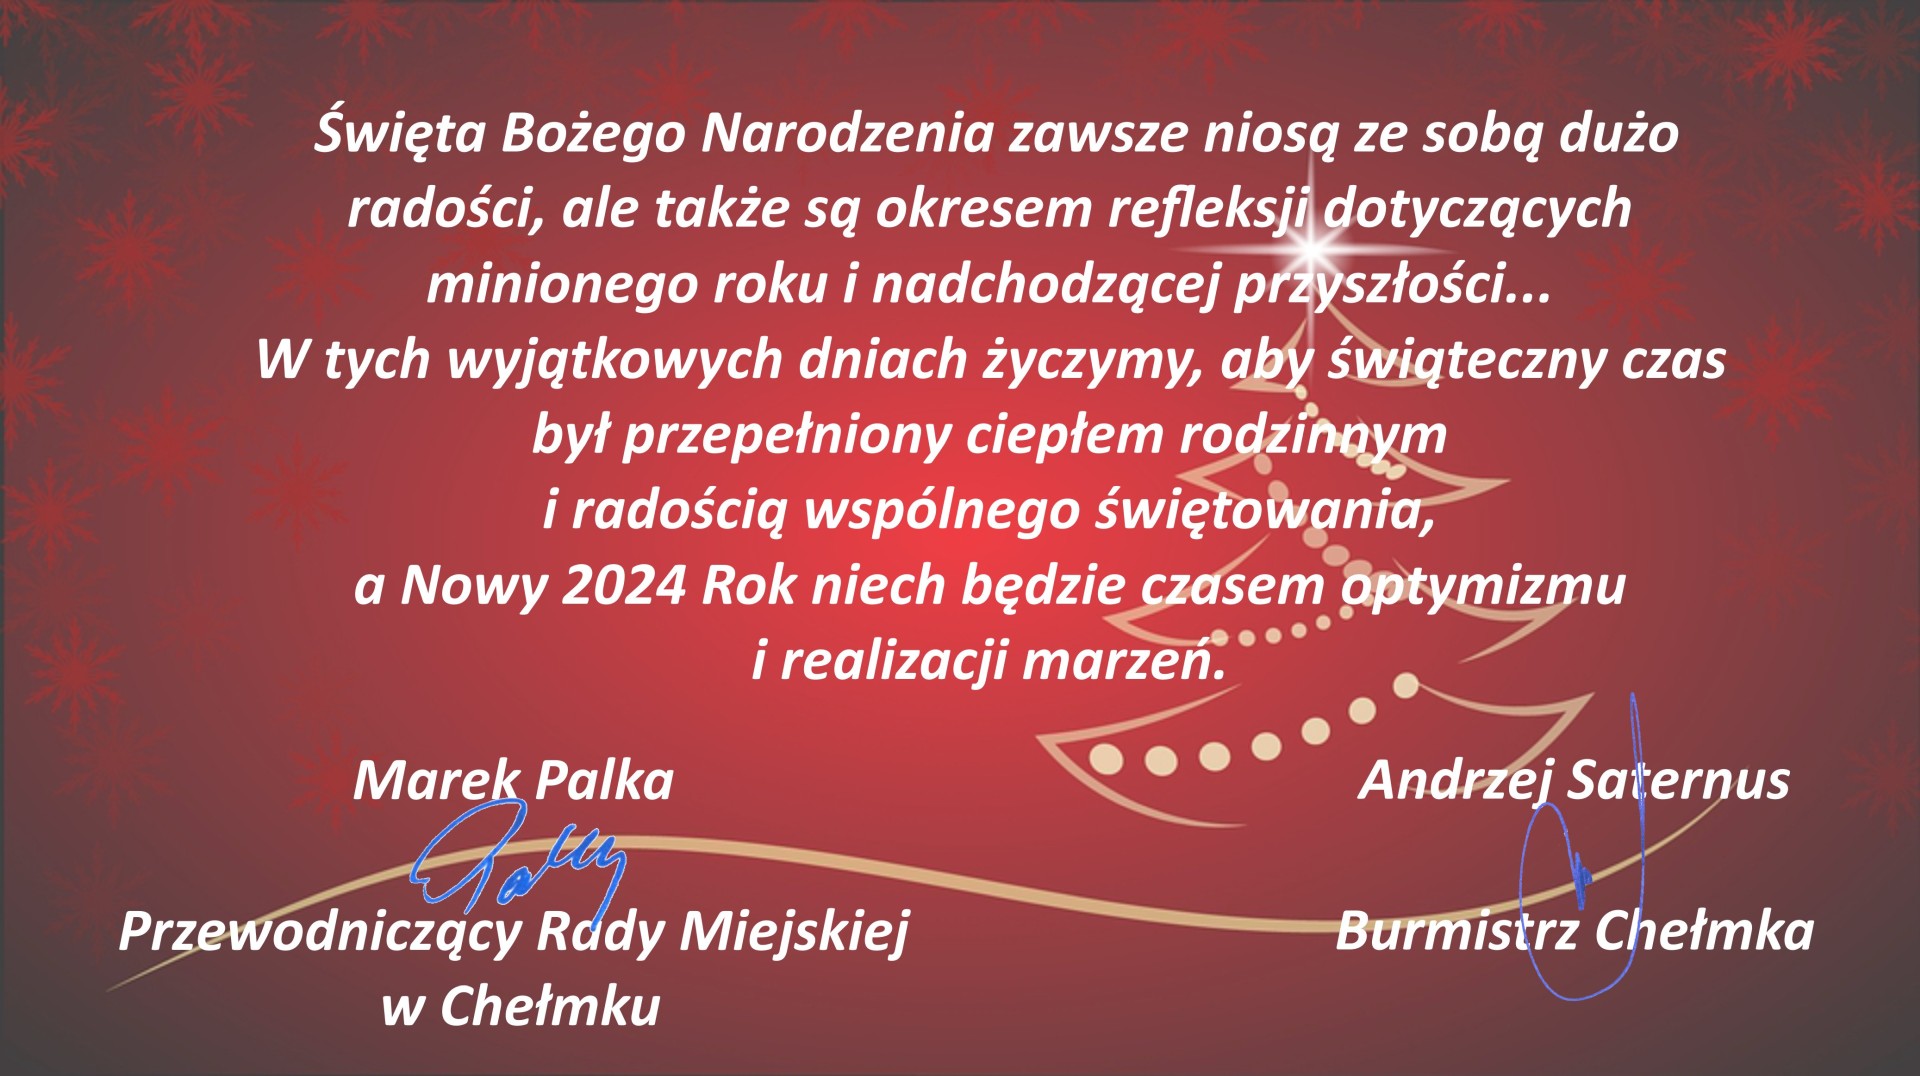 Życzenia Przewodniczącego Rady Miejskiej w Chełmku i Burmistrza Chełmka z okazji świąt Bożego Narodzenia i Nowego 2024 Roku.